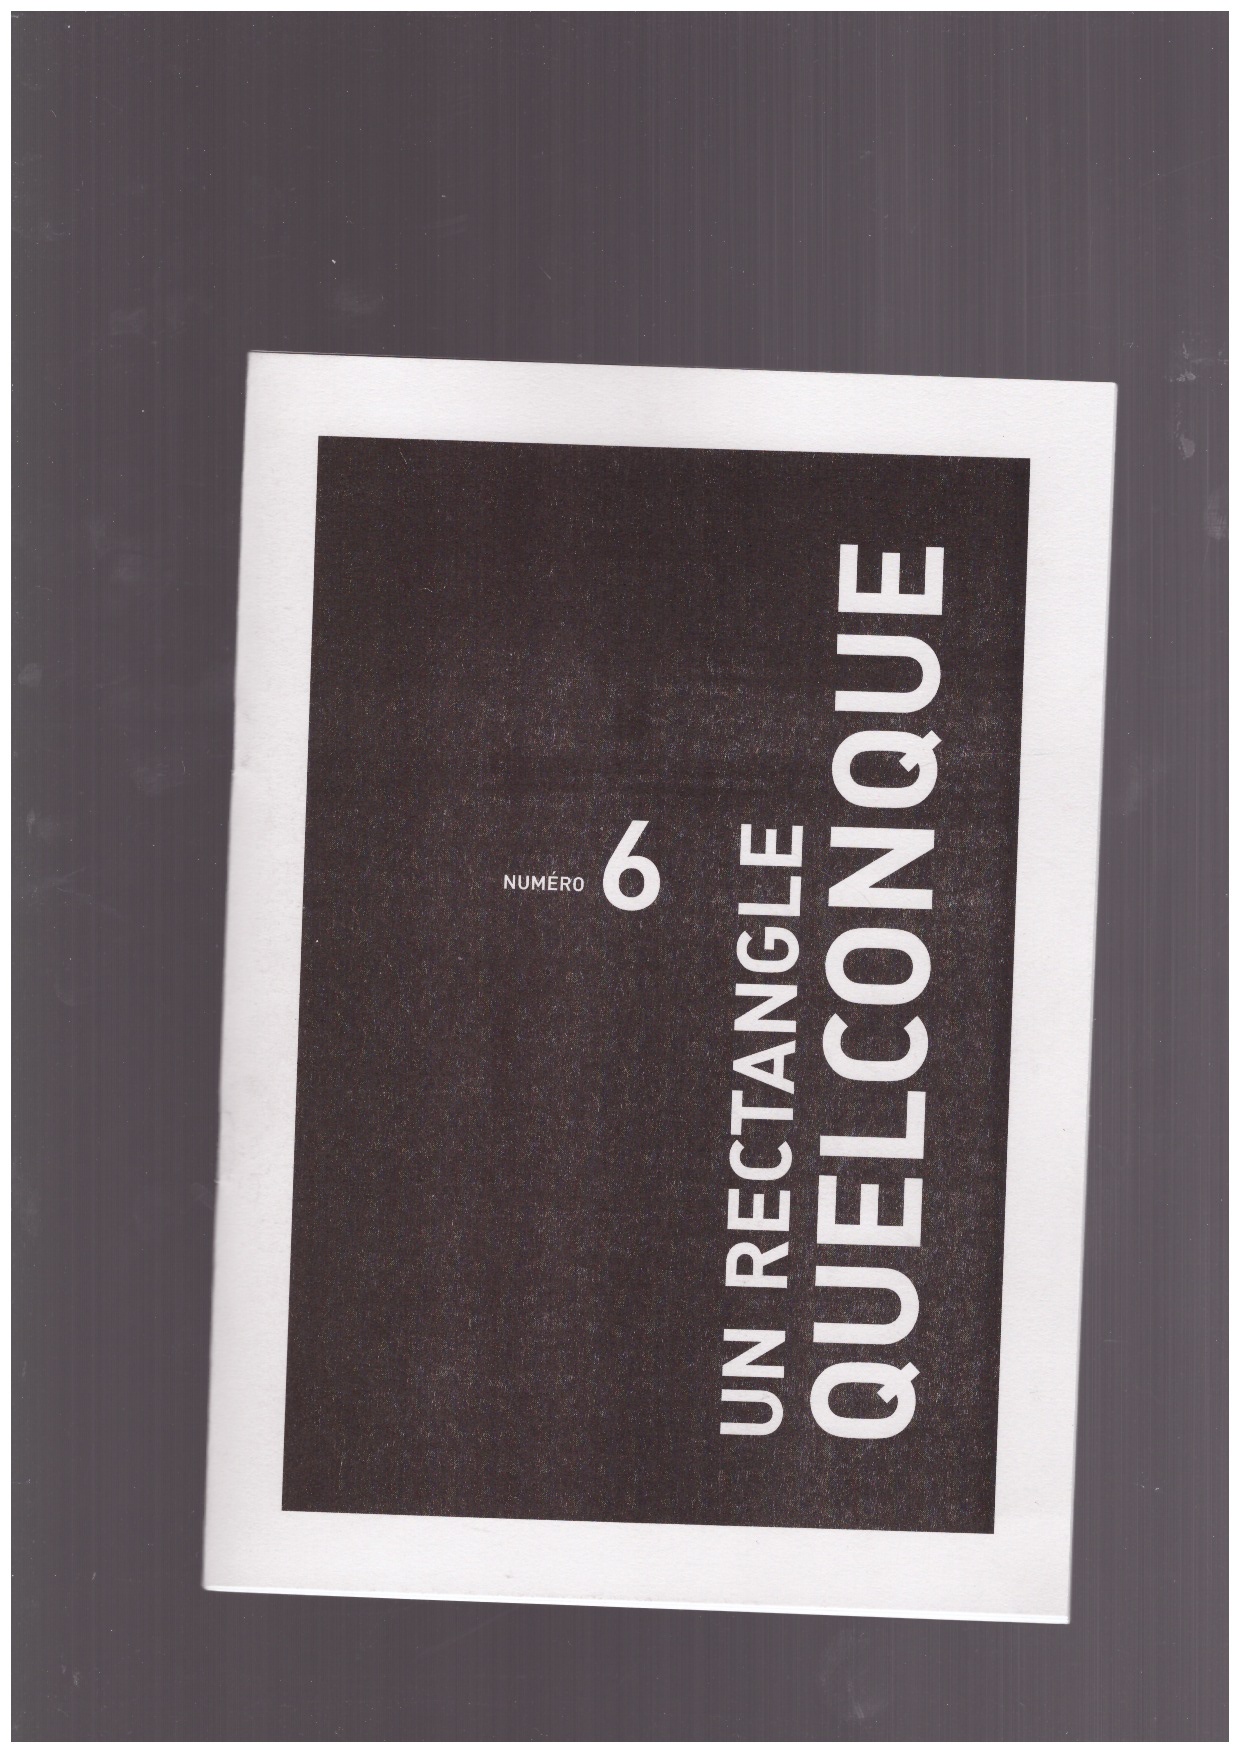 LE GOFF, Thomas; RÉGNIEZ, Emmanuel; SIDOLI, Tomas (eds.) - Un rectangle quelconque #6